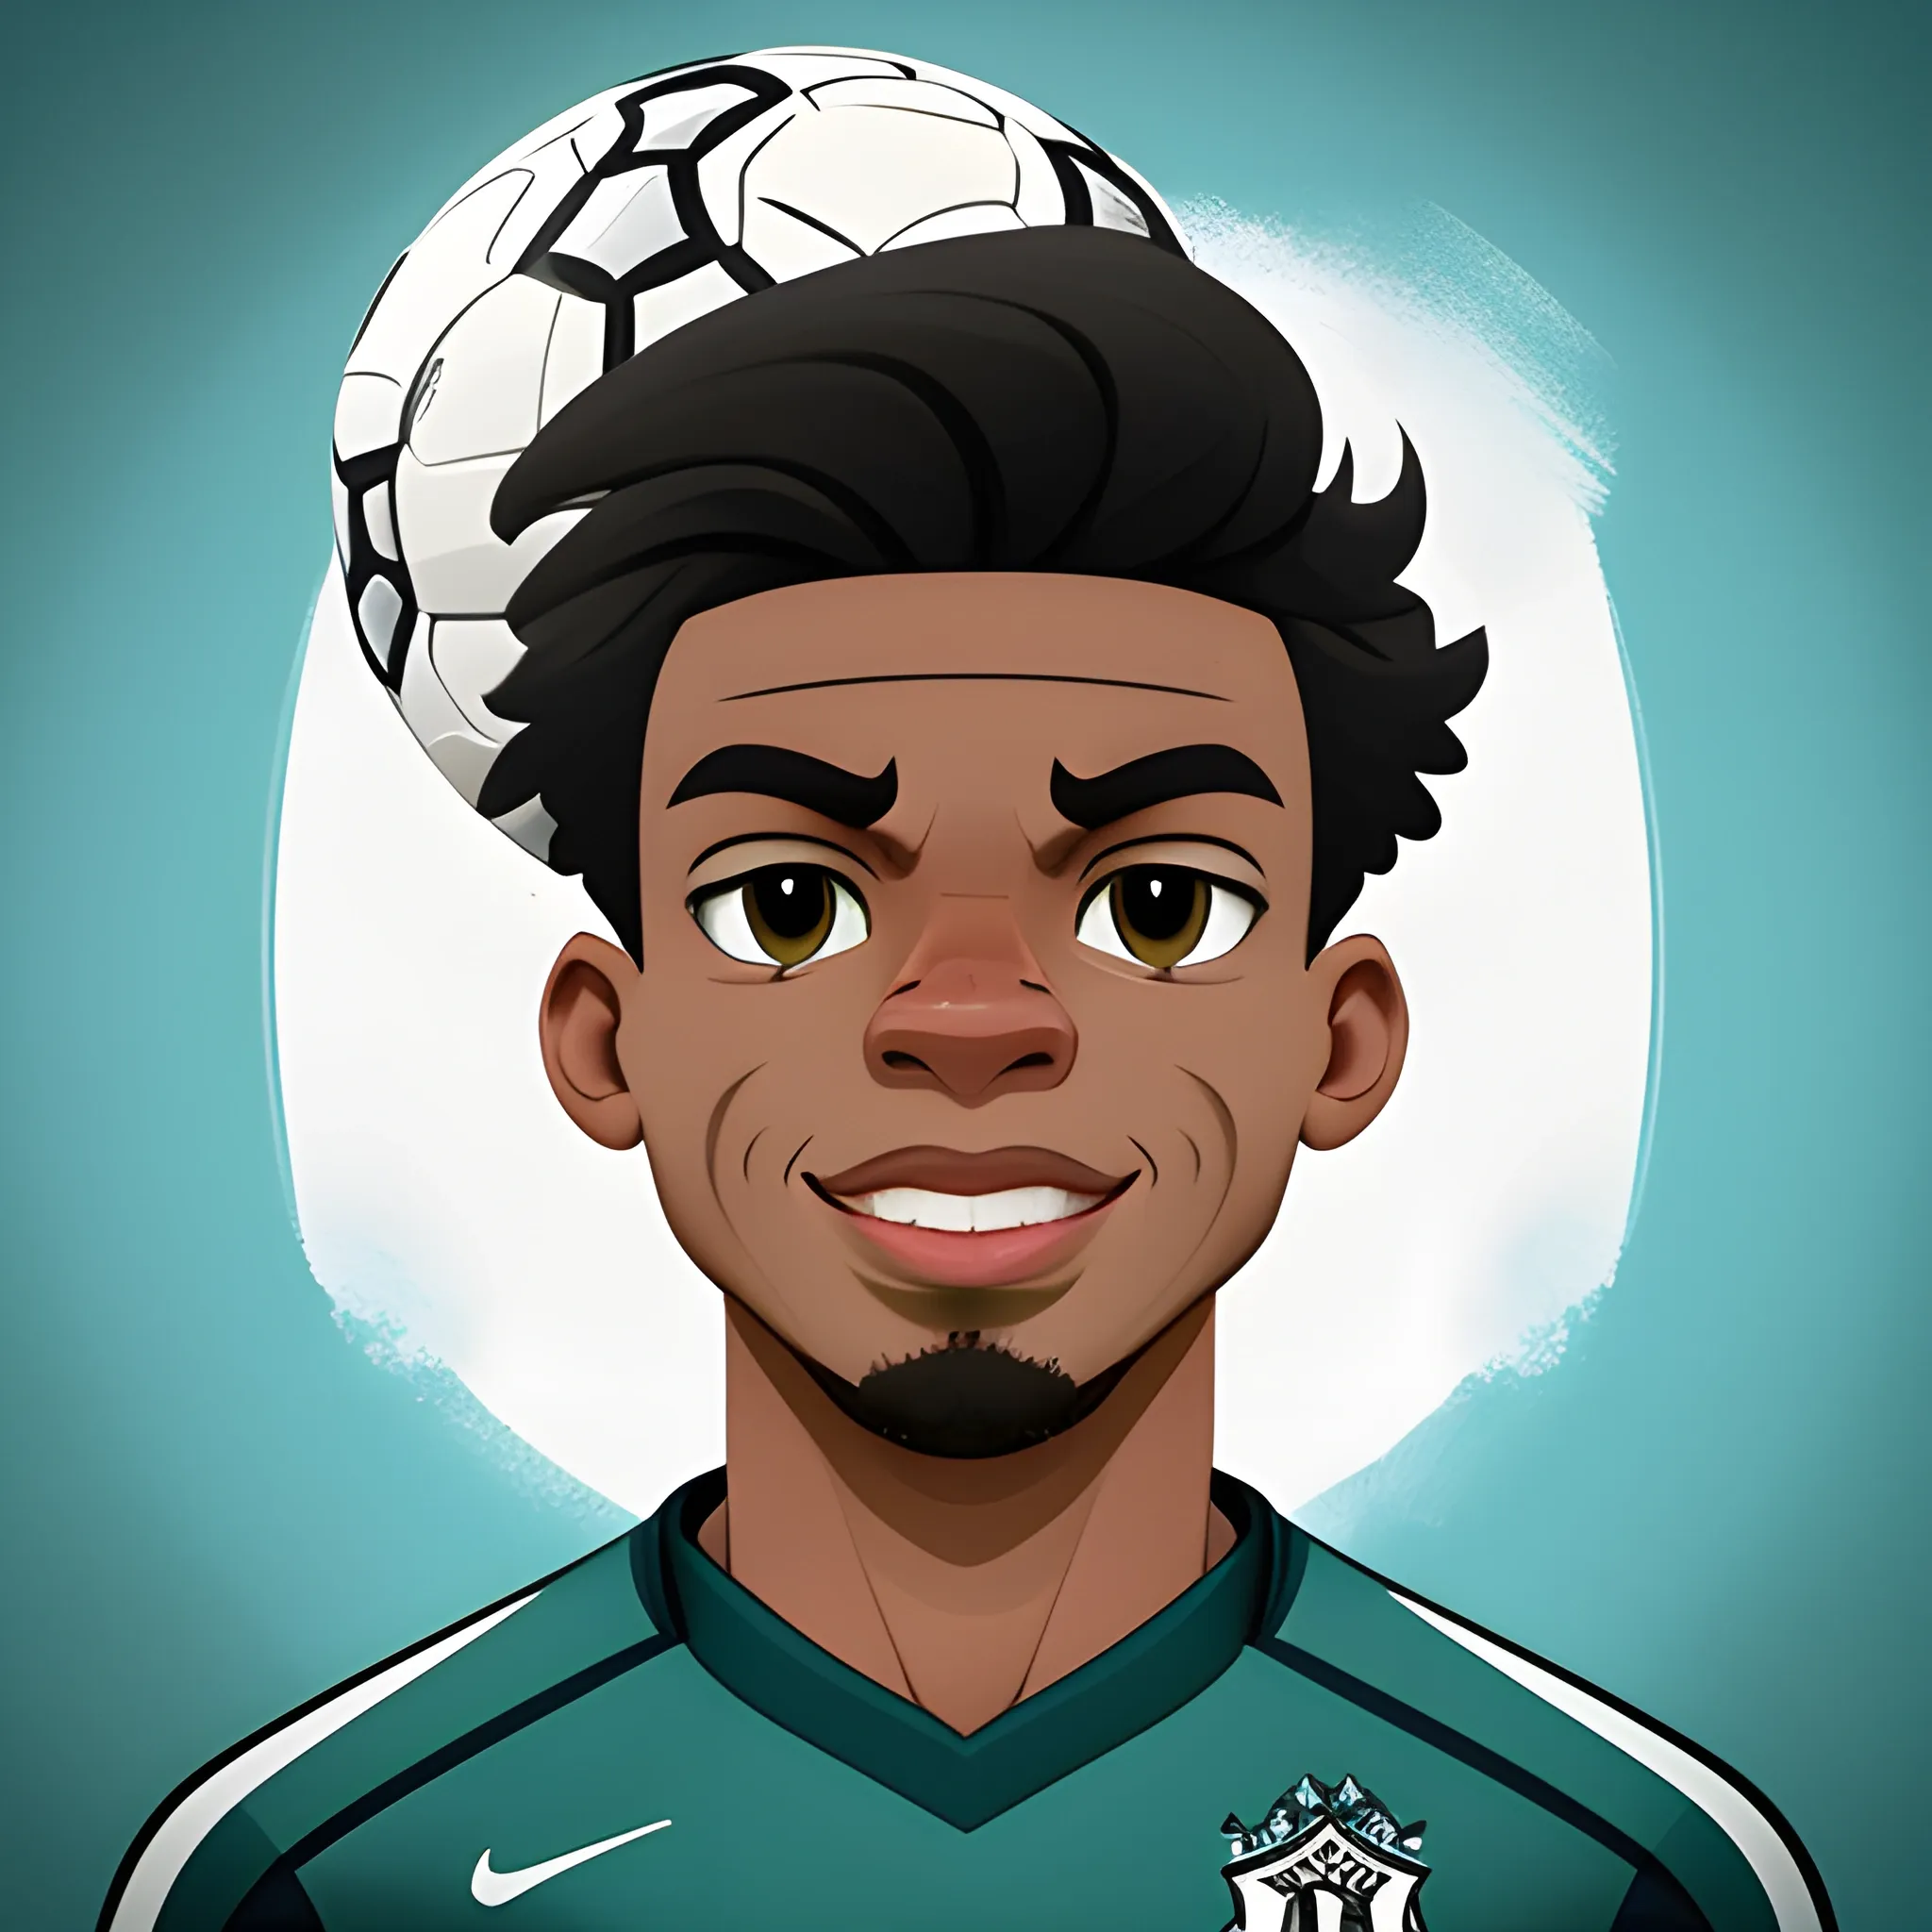 Character, soccer ballon, Rafael Leão face. Toon style